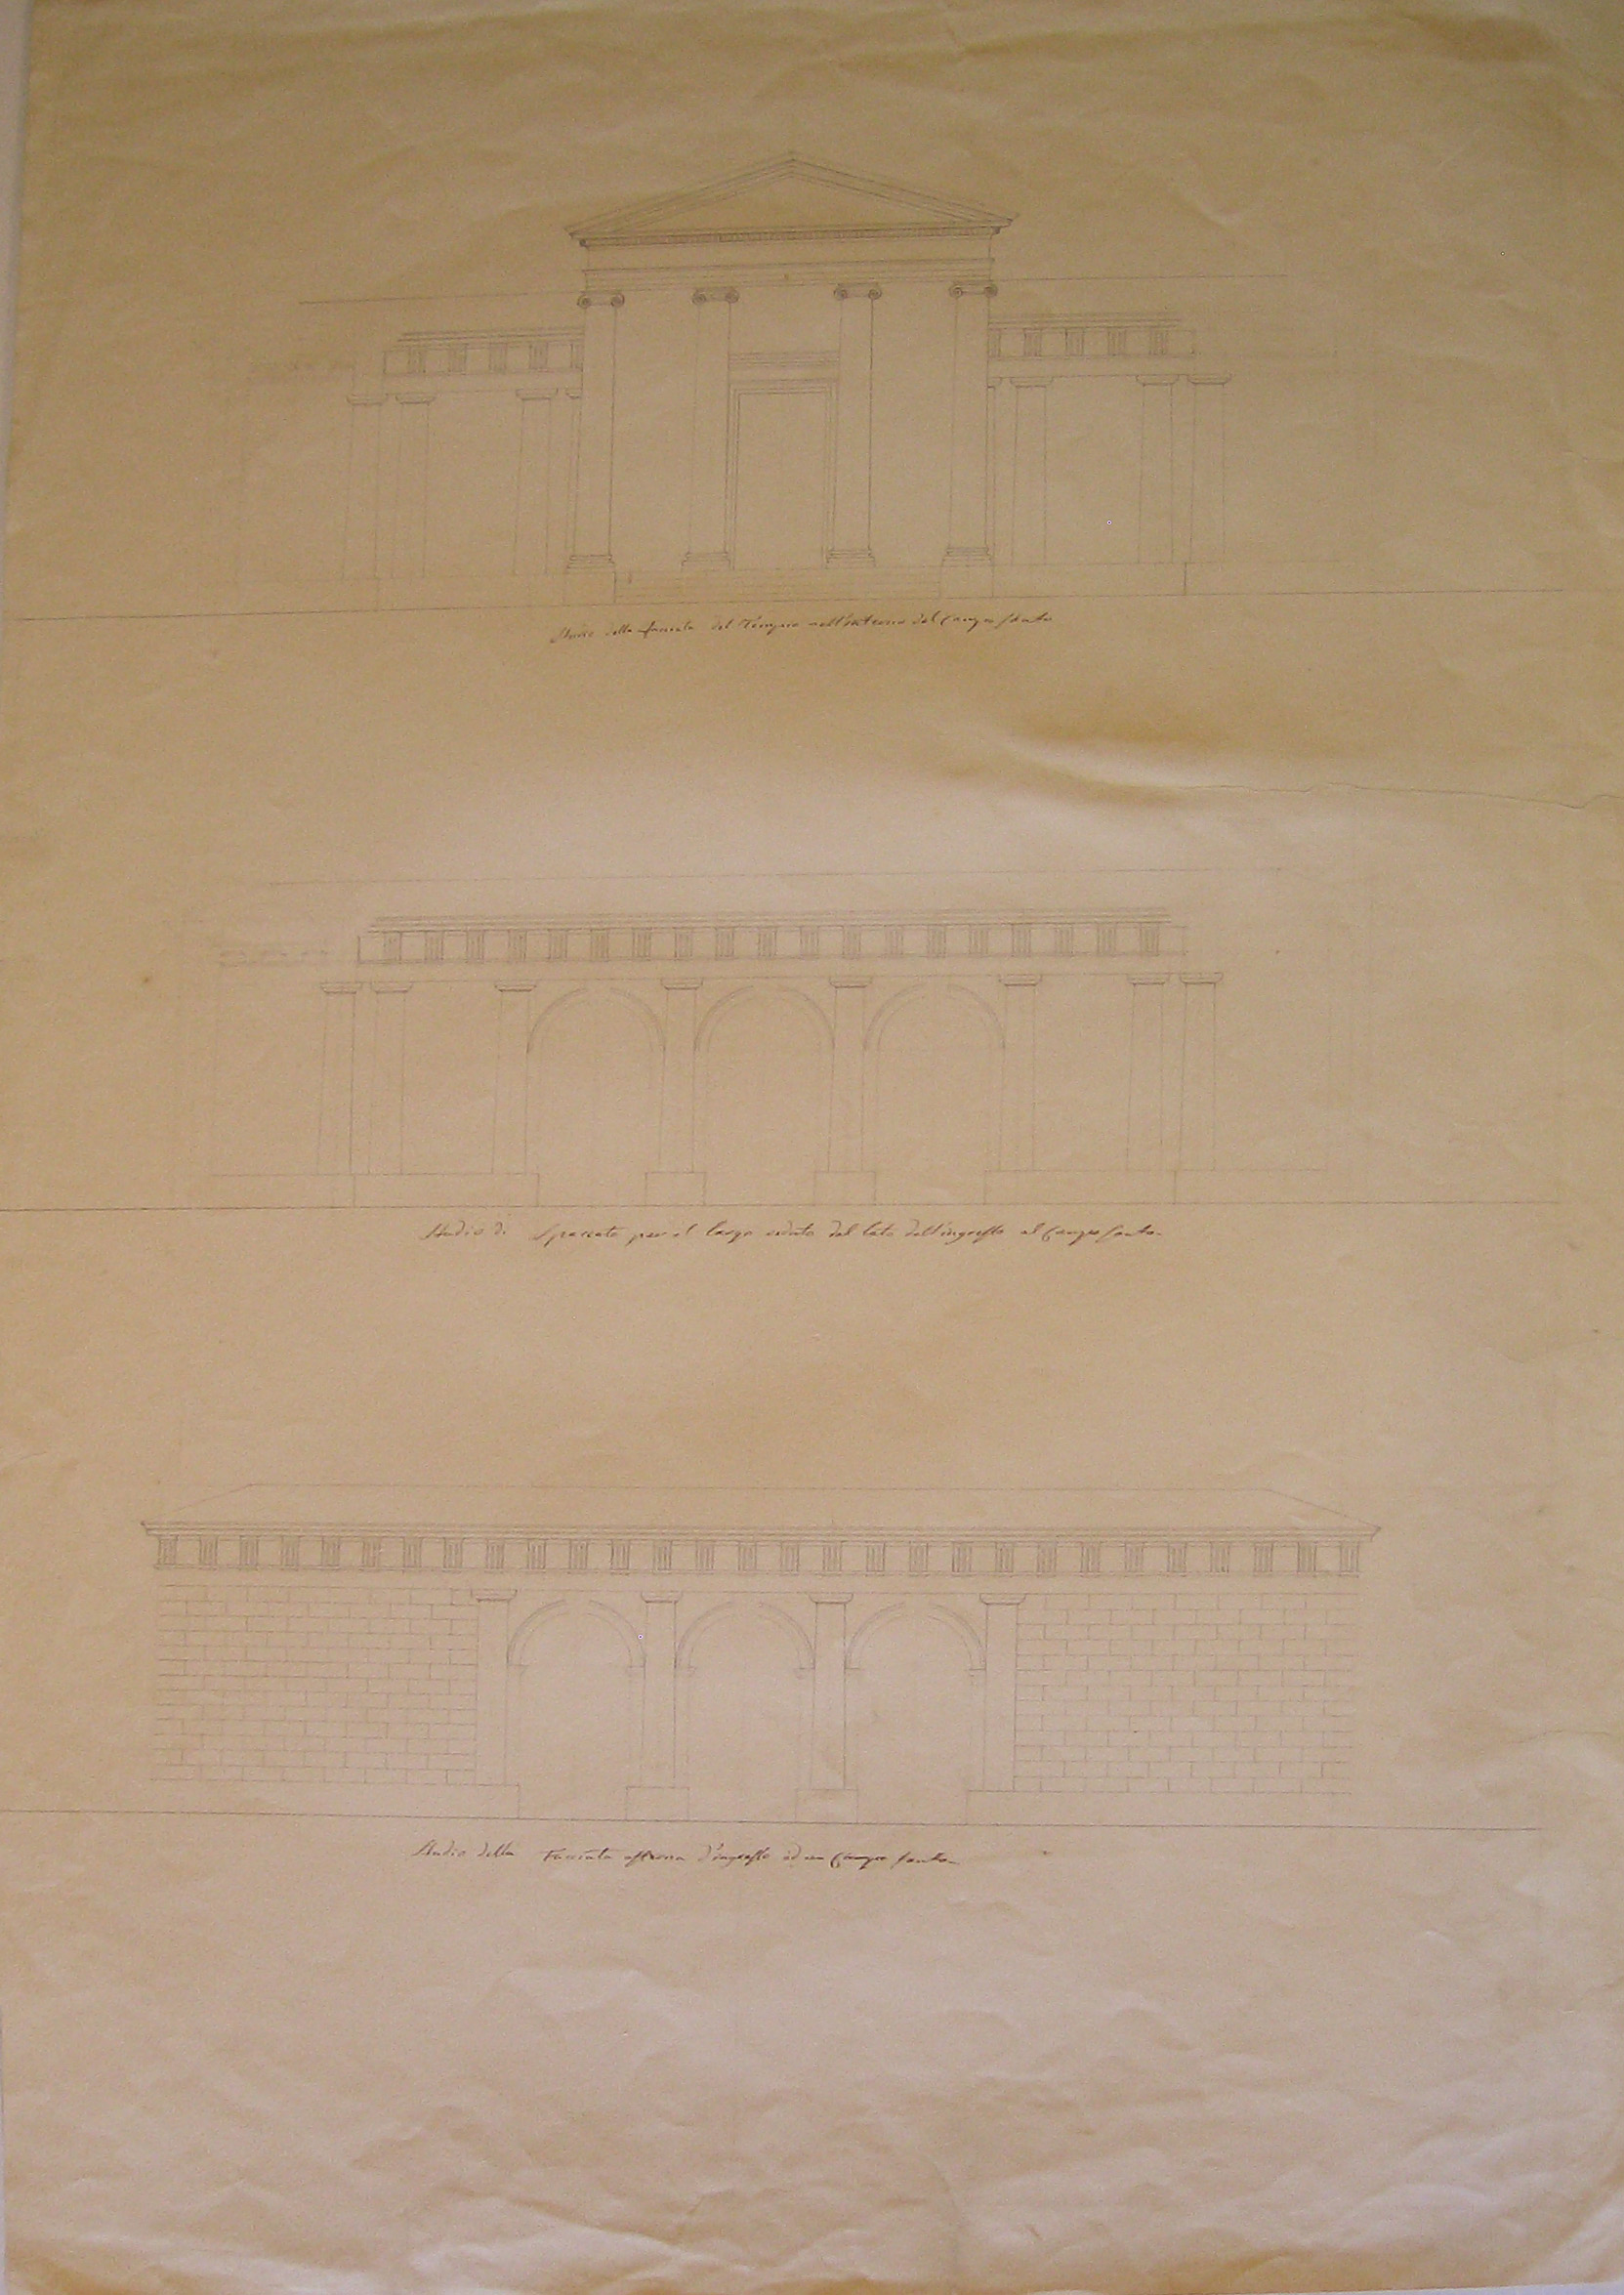 Progetto architettonico: prospetto e sezione di un cimitero (disegno architettonico) di Cagnola Luigi (attribuito) (secc. XVIII/XIX)